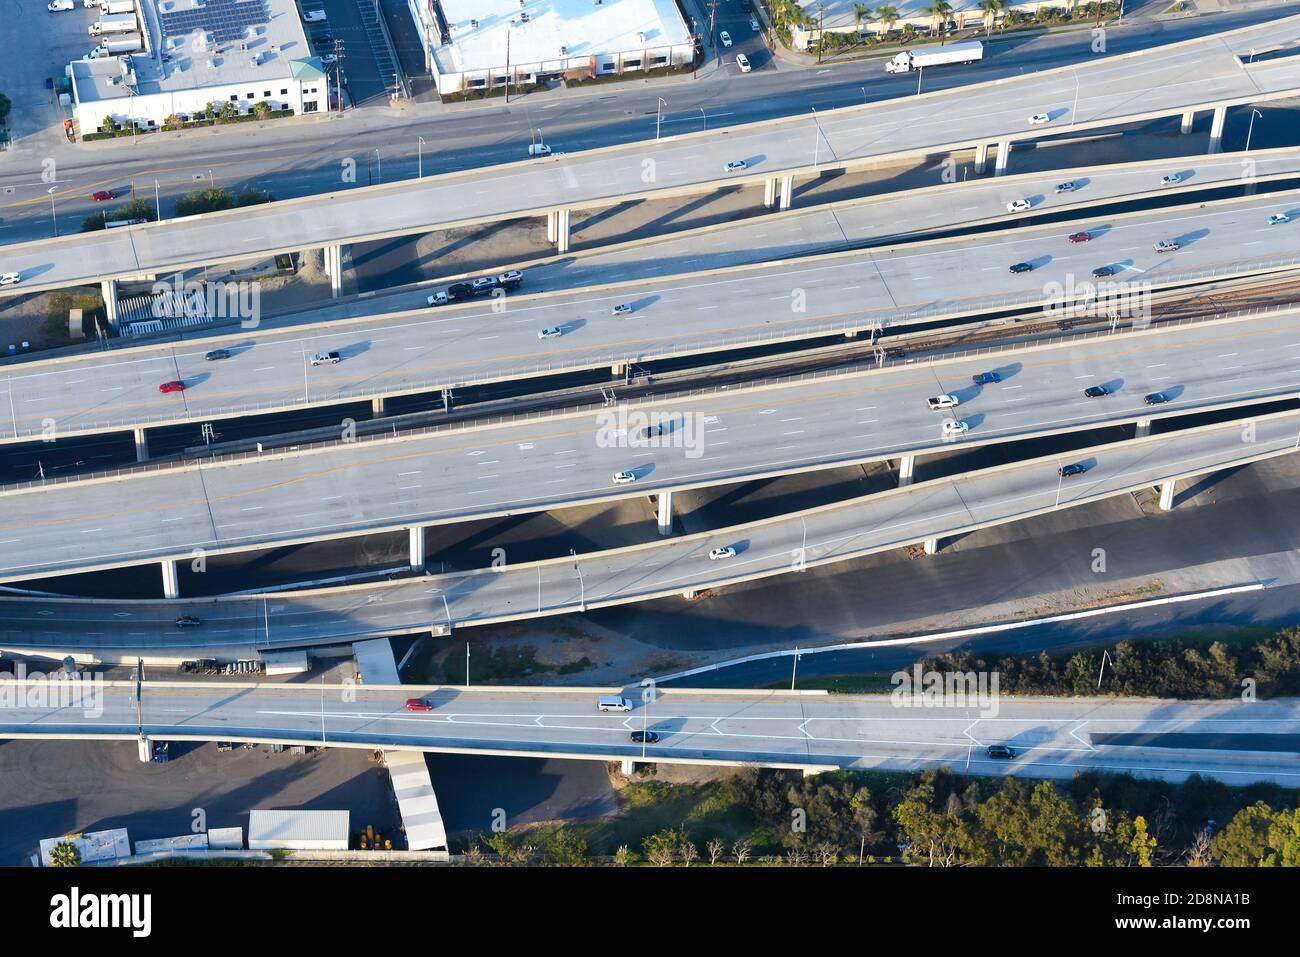 Luftaufnahme der Hochstraßenautobahn in Los Angeles, USA. Mehrere Ebenen und Spuren Autobahn mit leichtem Verkehr. Stockfoto